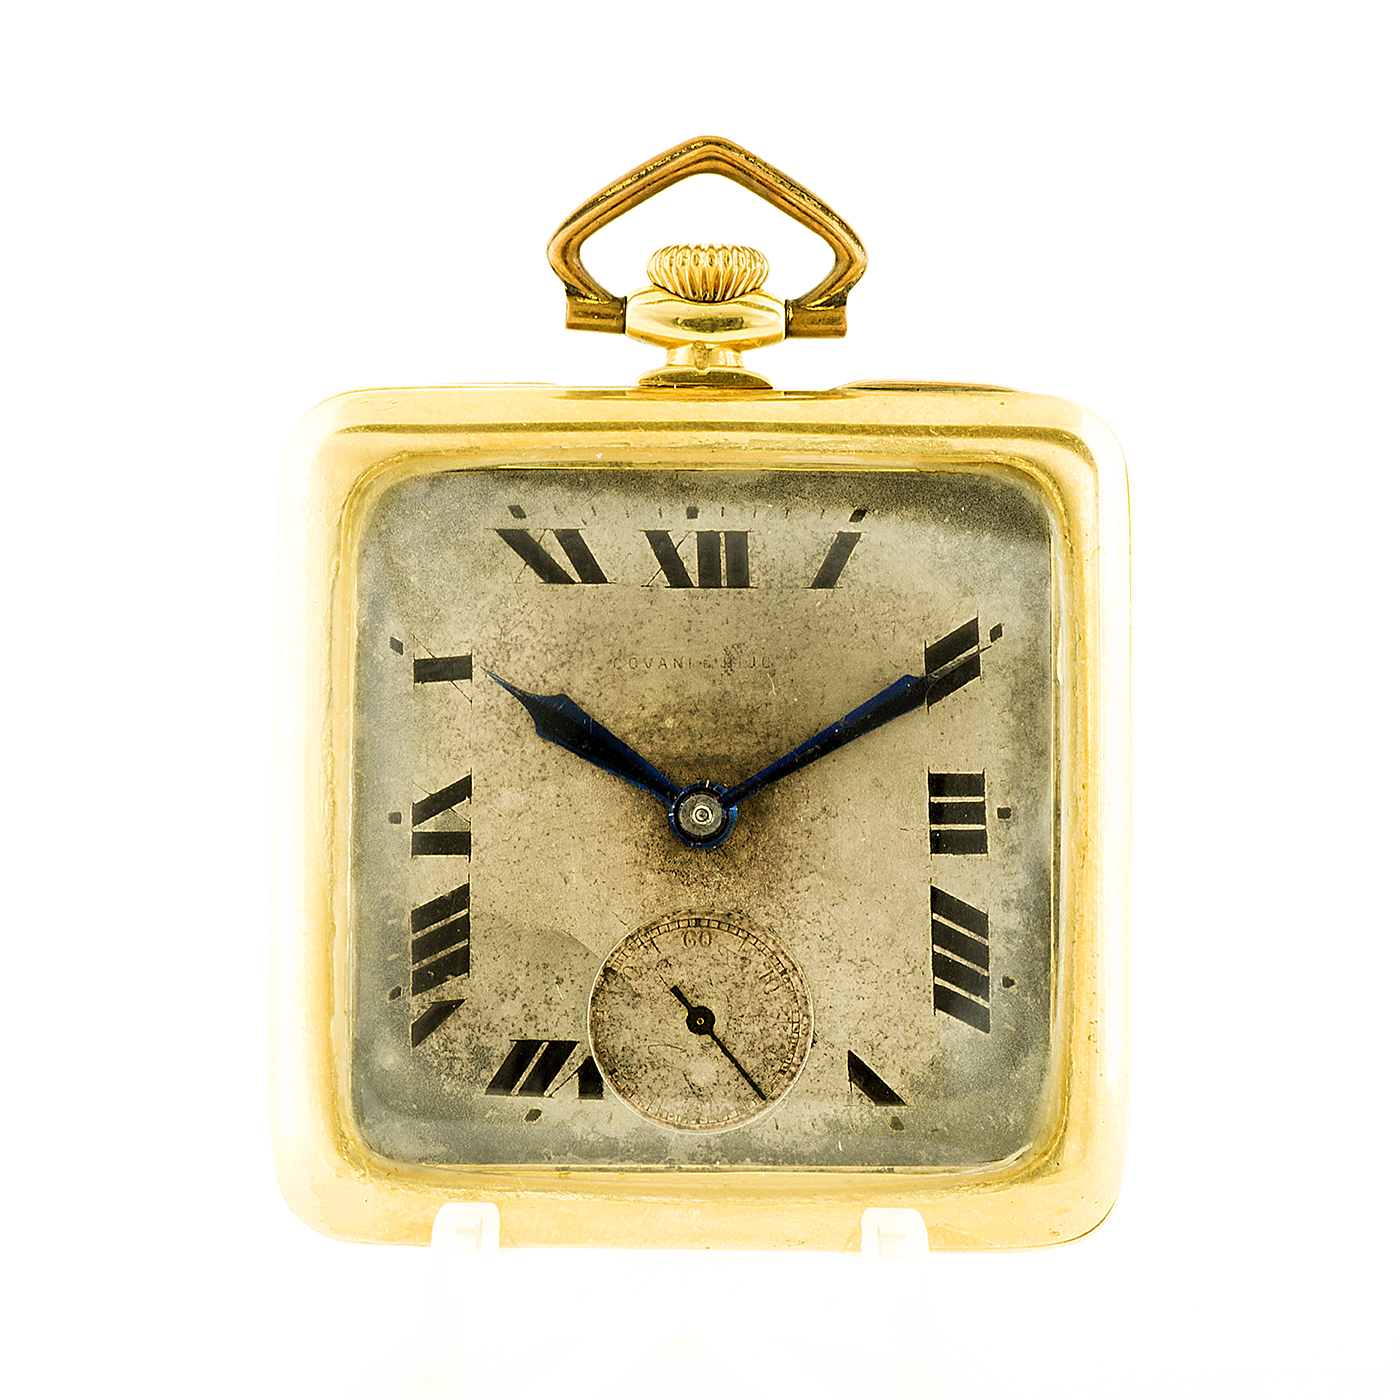 Covani e Hijo (Suiza). Reloj de Bolsillo-colgar, lepine y remontoir. Circa 1900. Oro 18k.